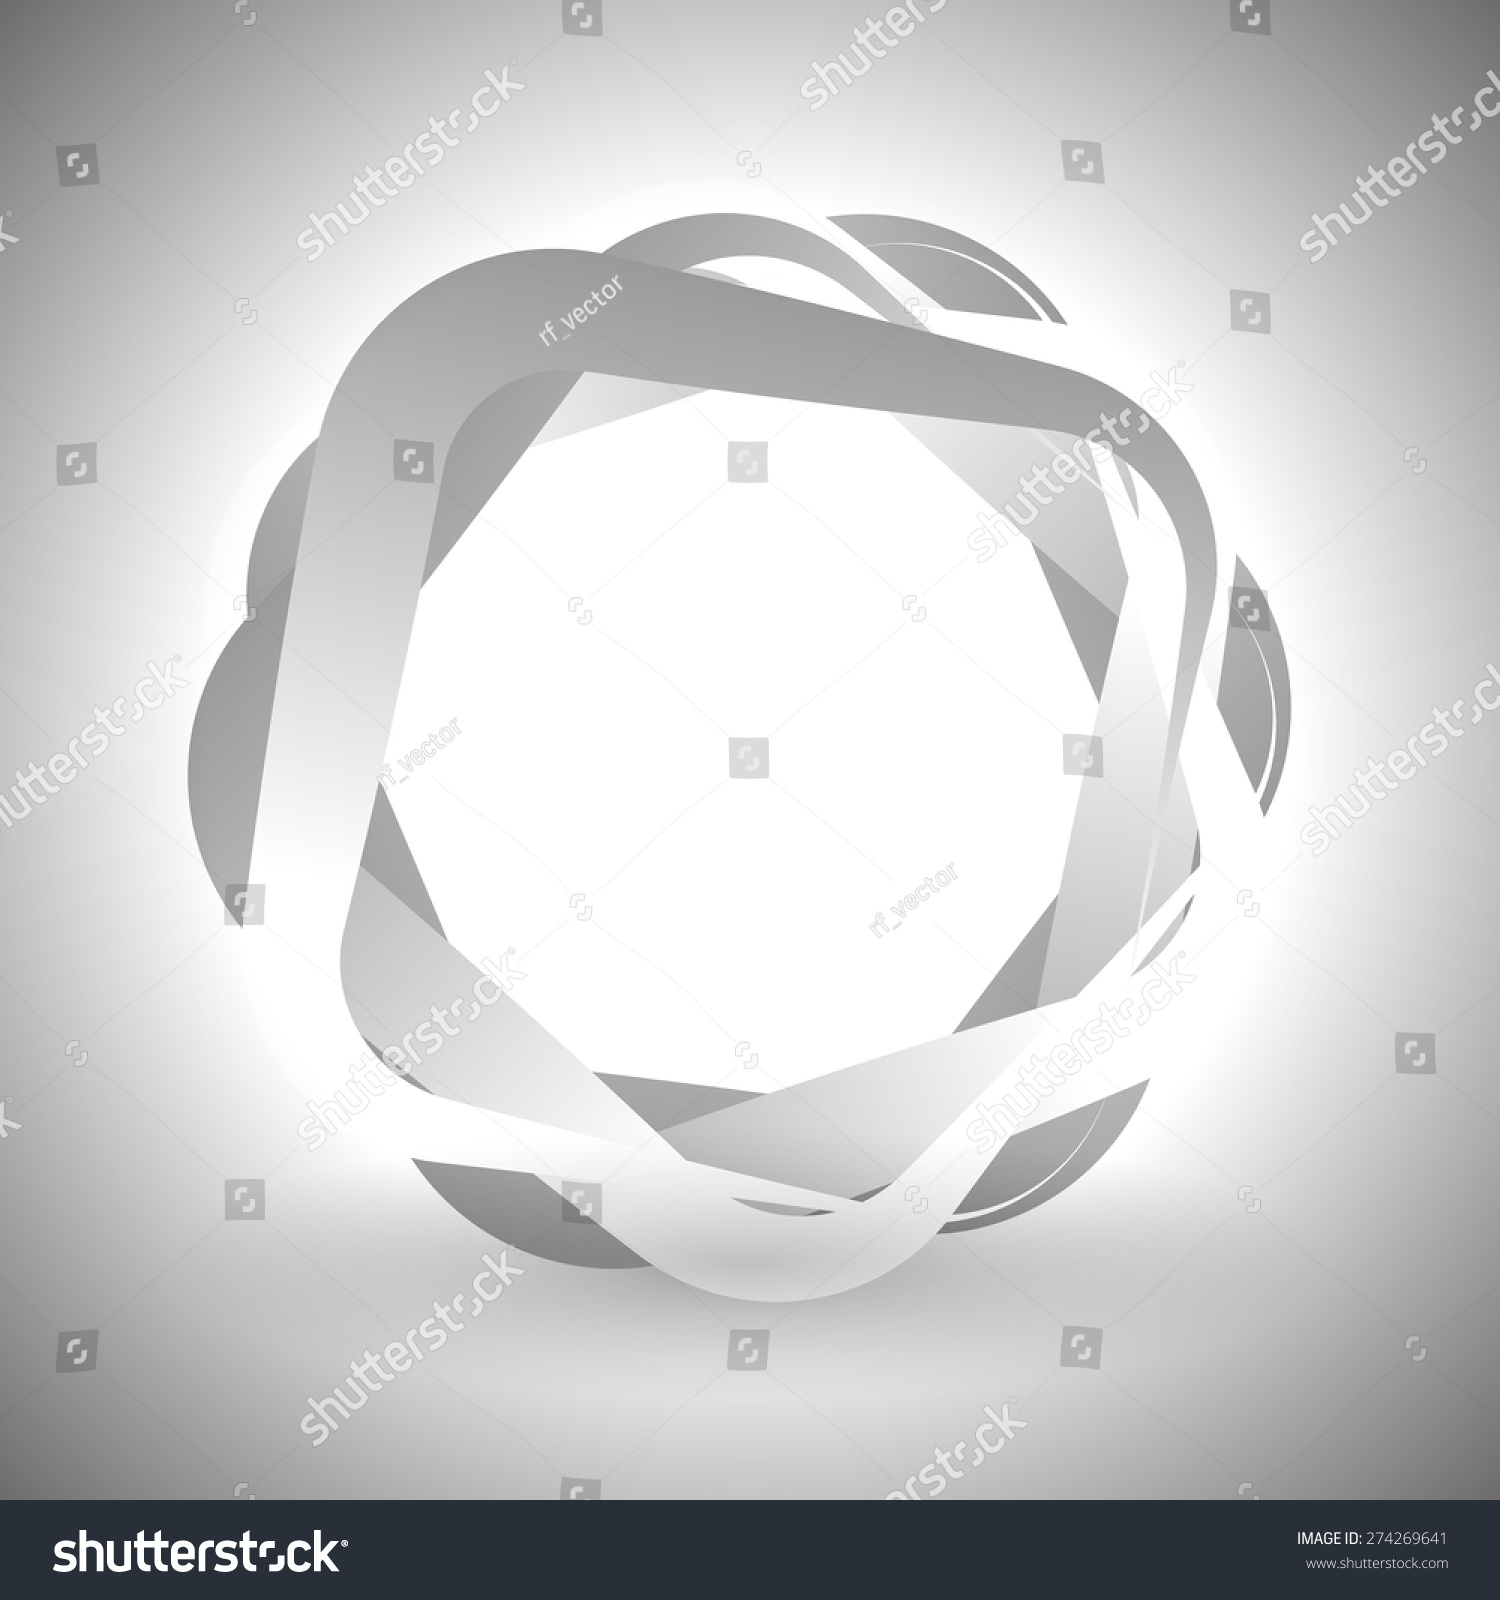 抽象的灰度图像。重叠的圆角正方形和透明度。